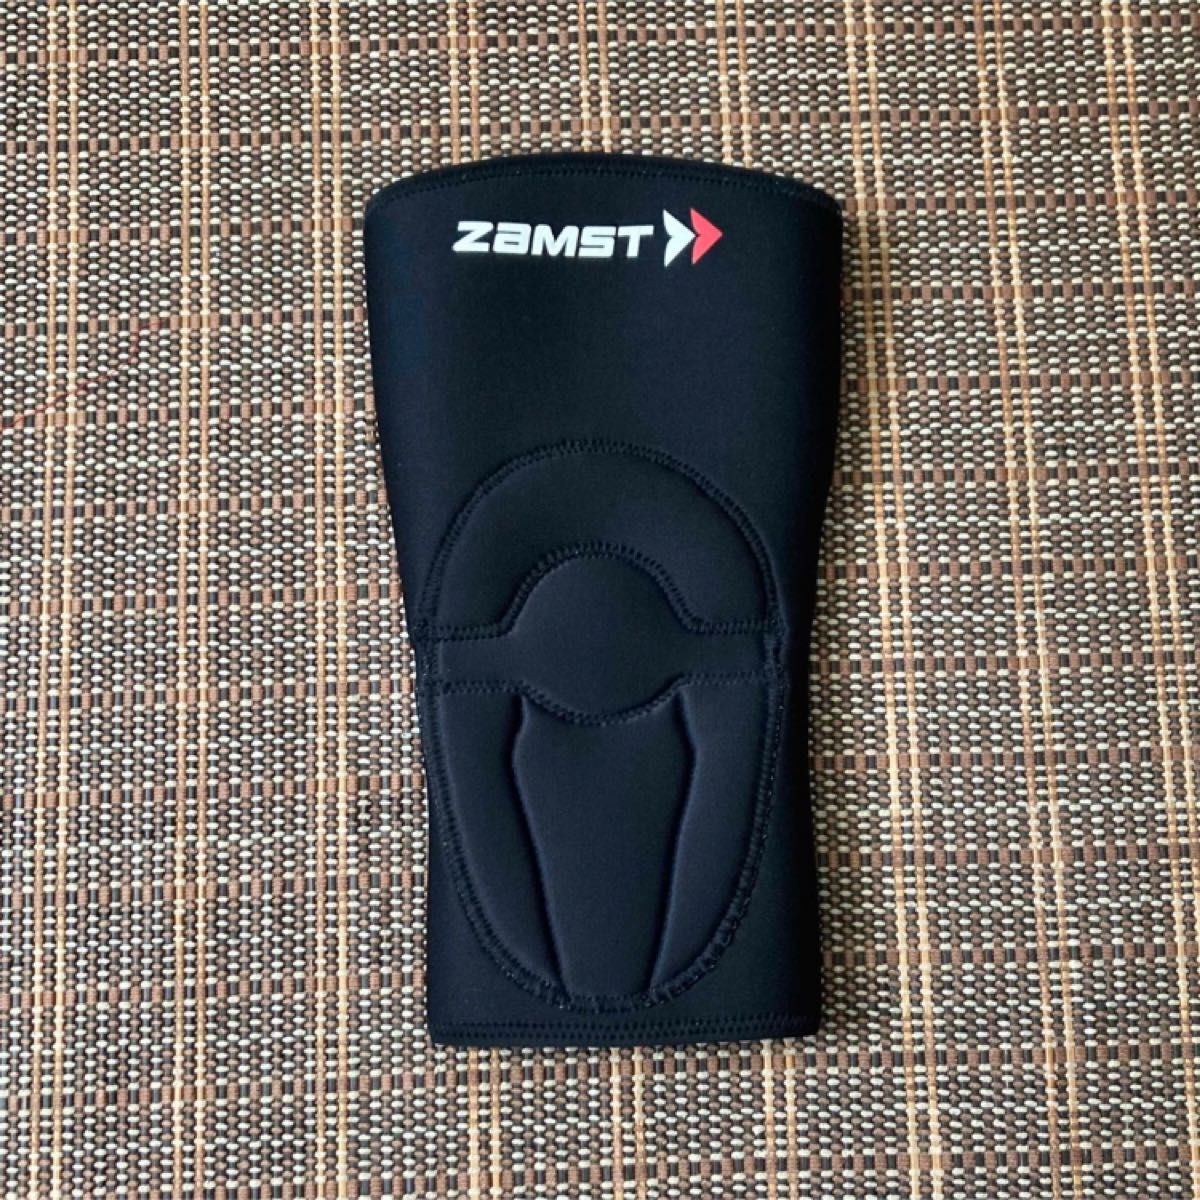 ザムスト ZK-1 膝サポーター 左右兼用 Sサイズ ZAMST